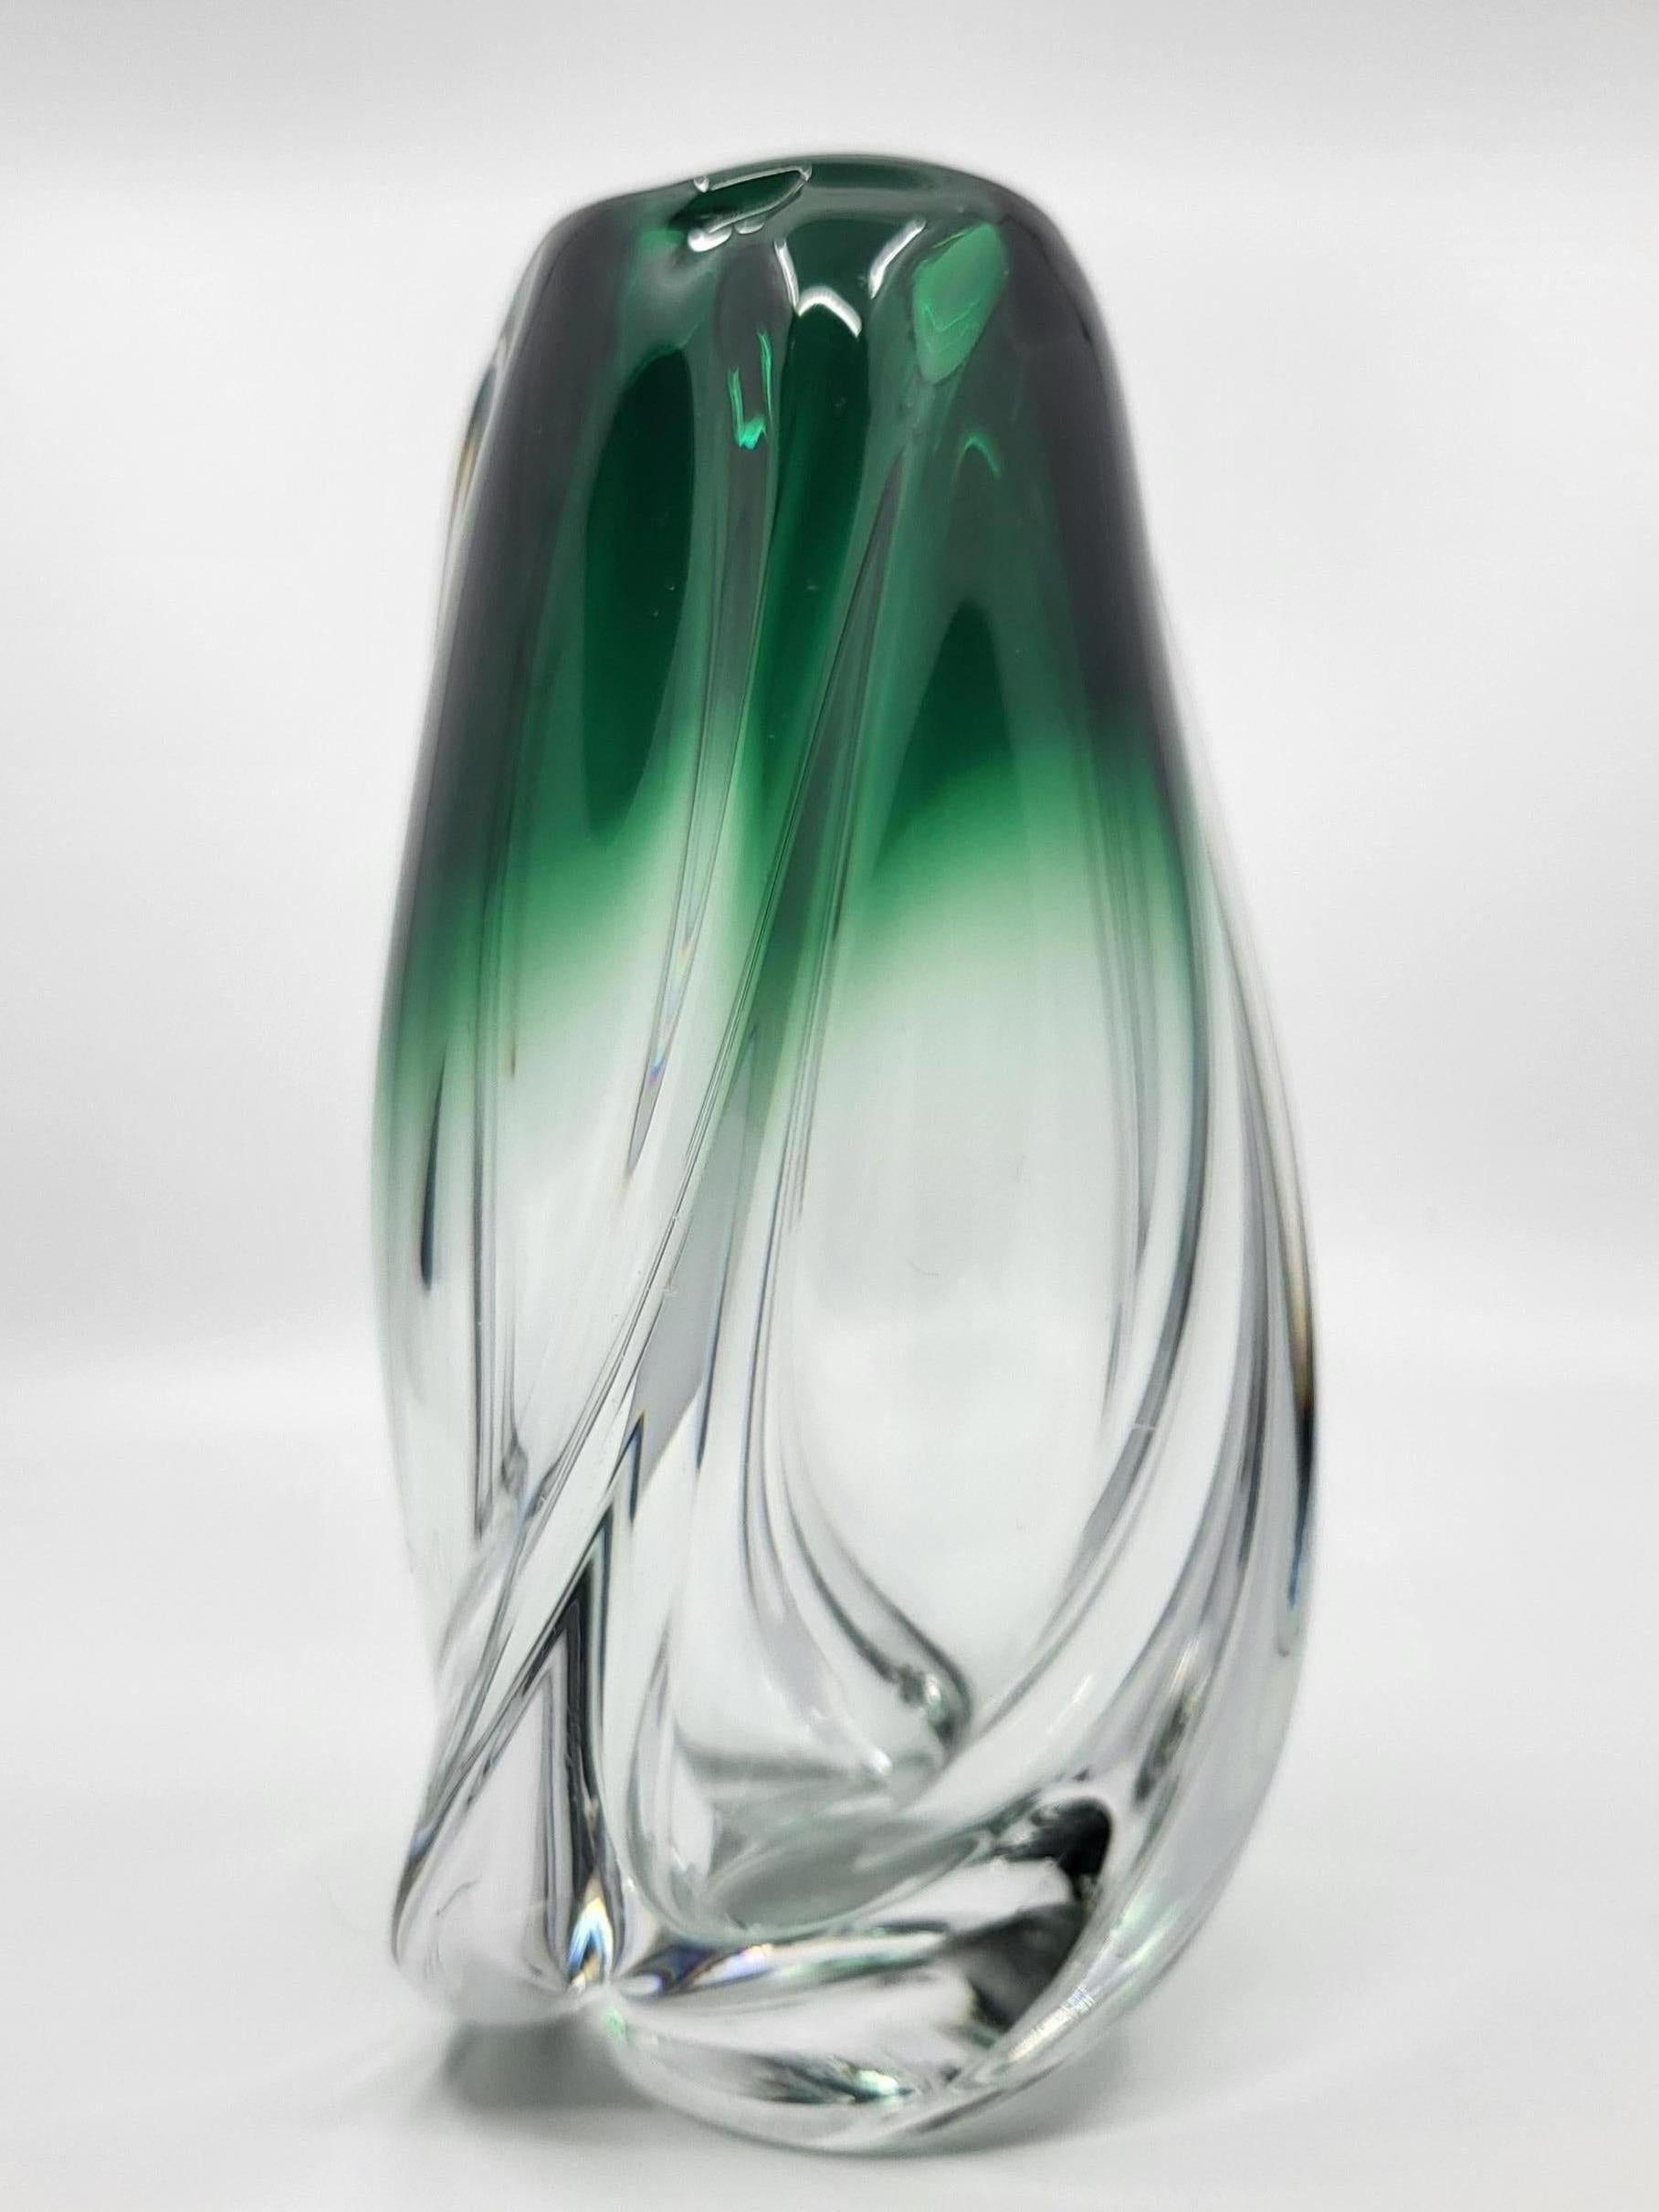 Vase vintage en verre soufflé. Il possède un magnifique dégradé de couleur verte. Très original de part sa forme ovoïde. Les cristalleries du val Saint-Lambert furent créées en 1826 sur le site d'une ancienne abbaye à Seraing, près de liège, en